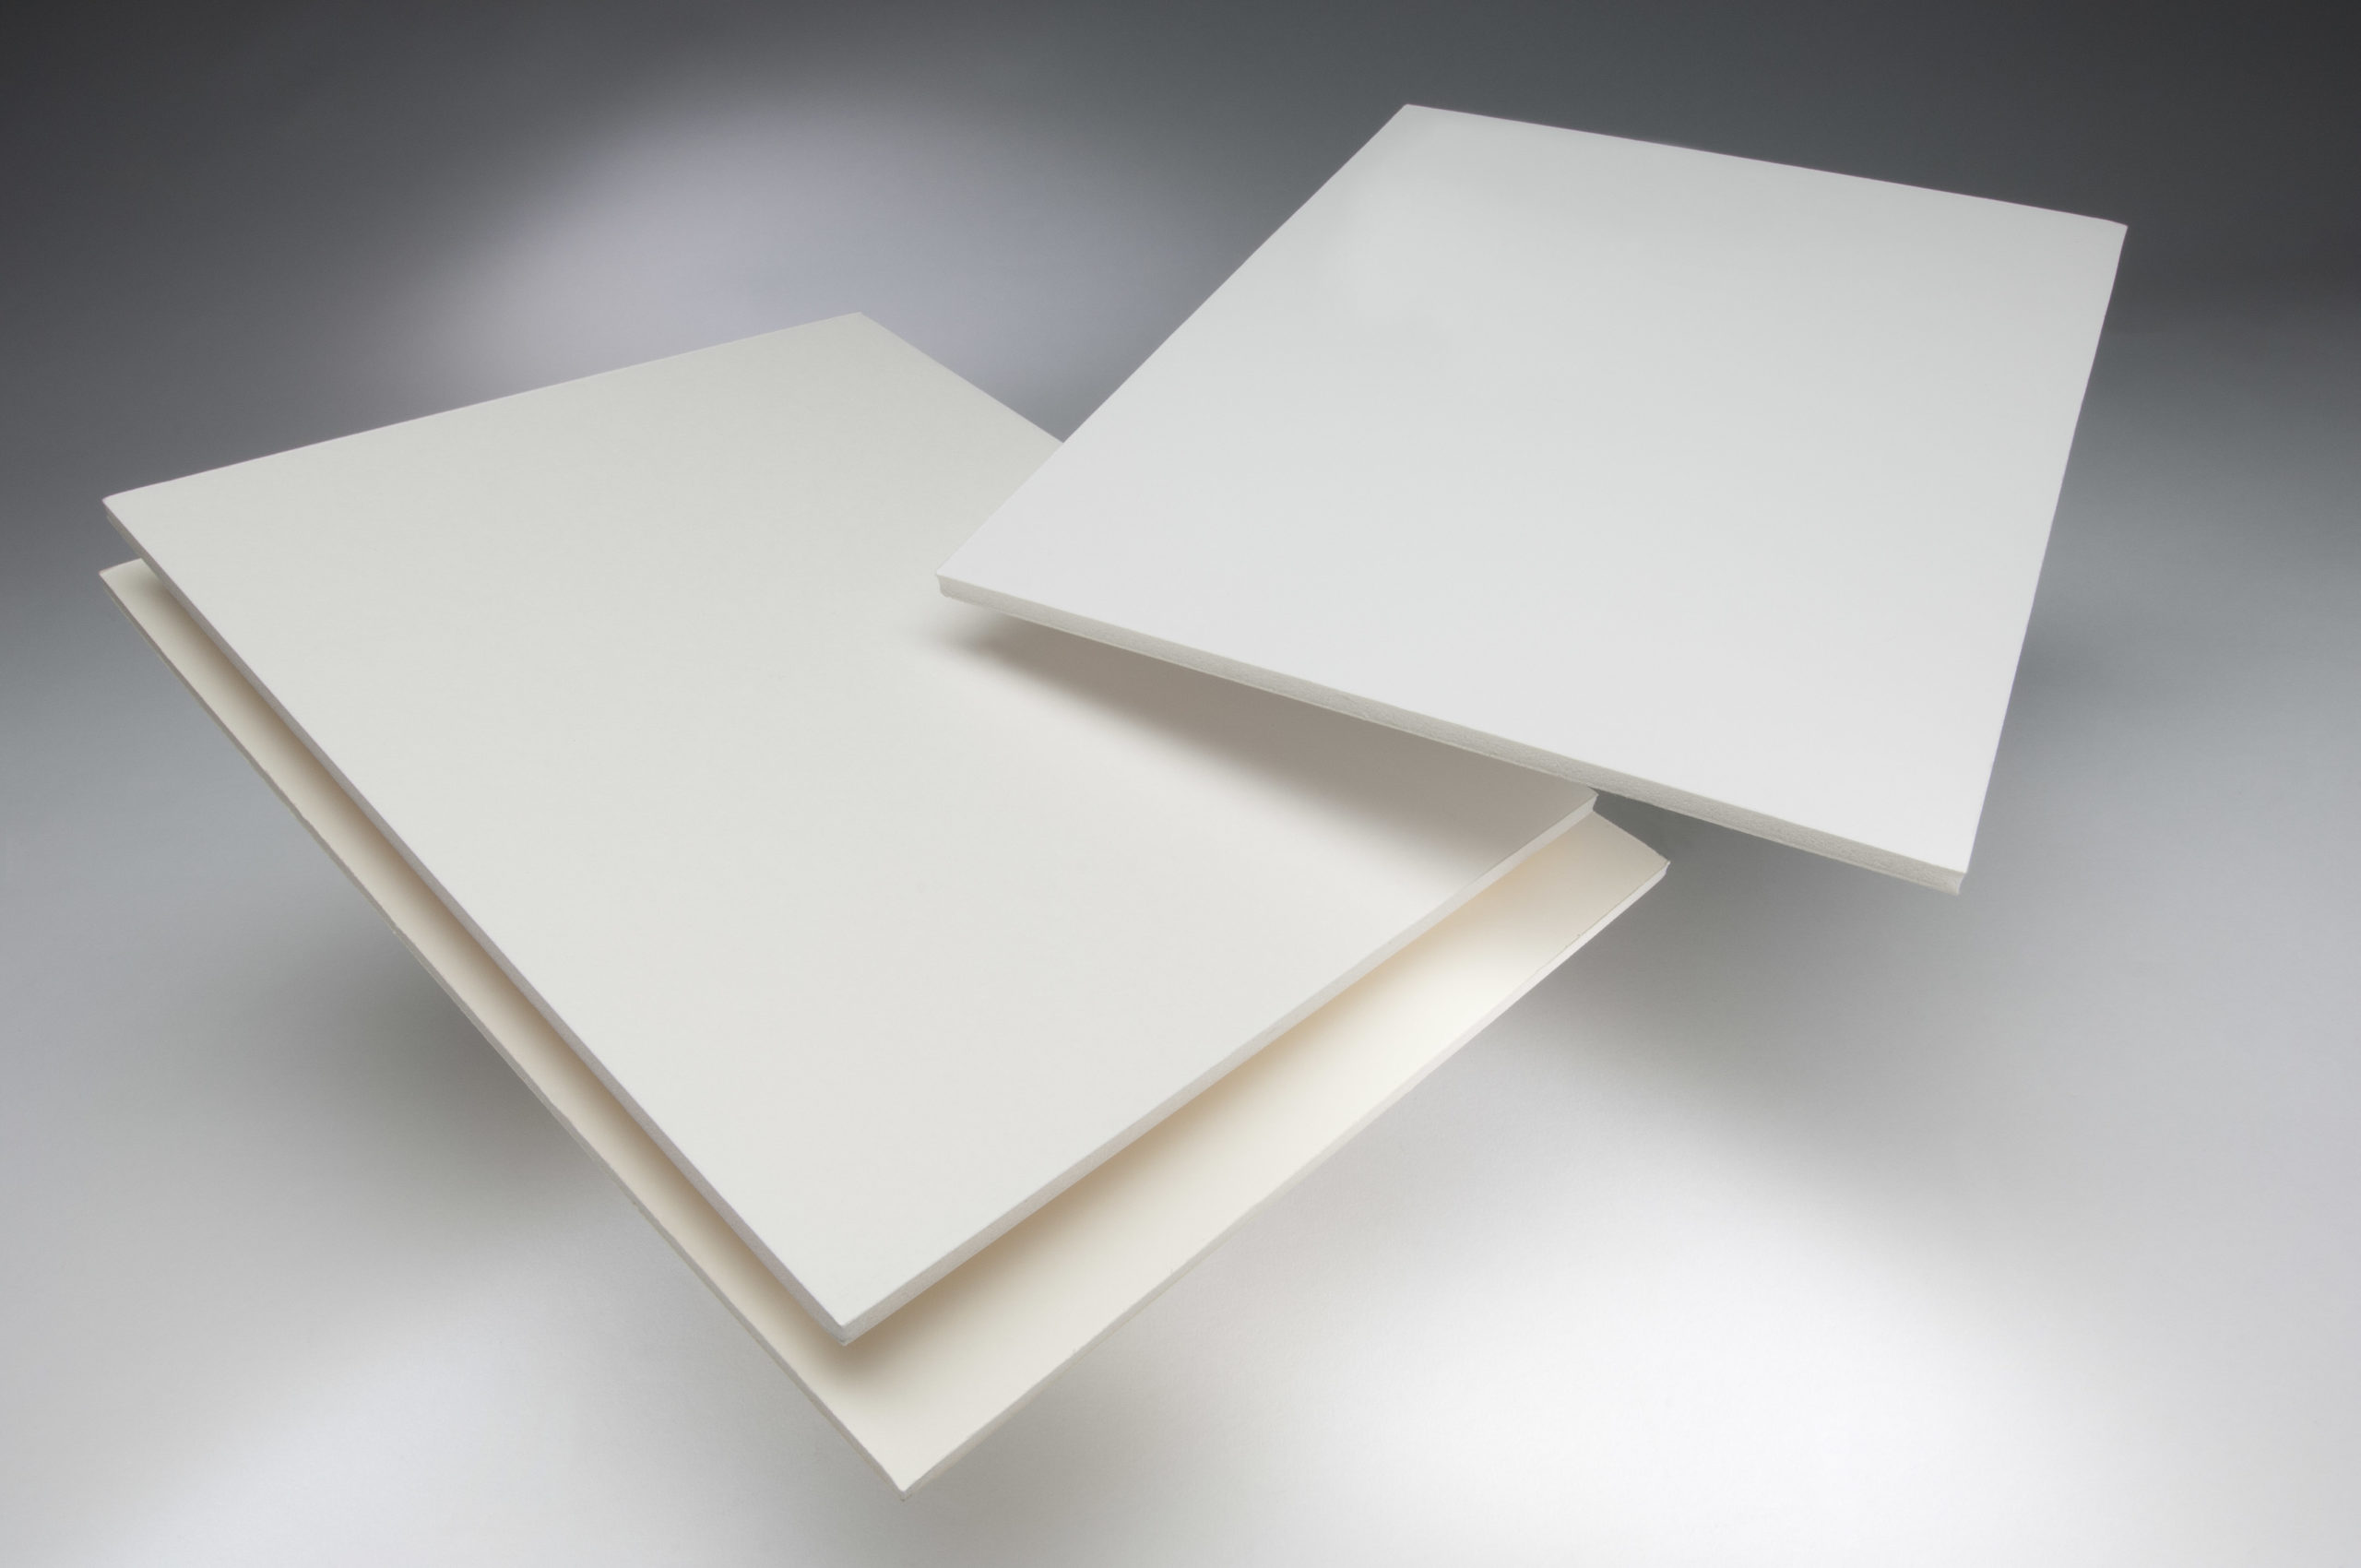 White Foam Board Mount Board 5mm Thick Foam Sheet Sign Display Model Backdrop Craft A4 3 Sheet 210mm x 297mm 